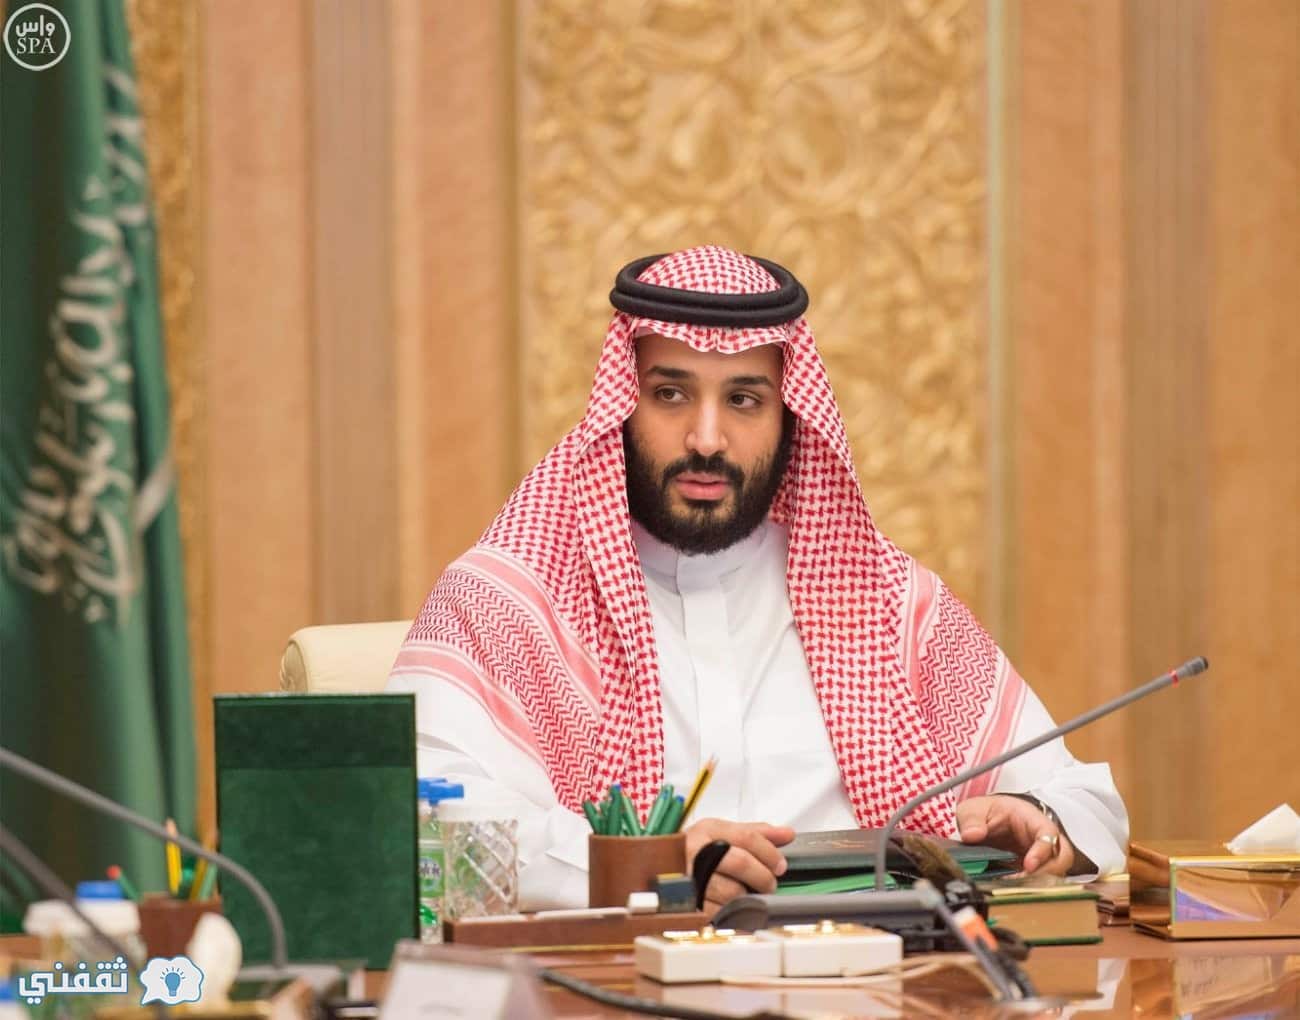 السعودية: إعلان هام لكل وافد يرغب بتجديد الإقامة 5 سنوات أو أكثر بشرط واحد فقط ! التفاصيل